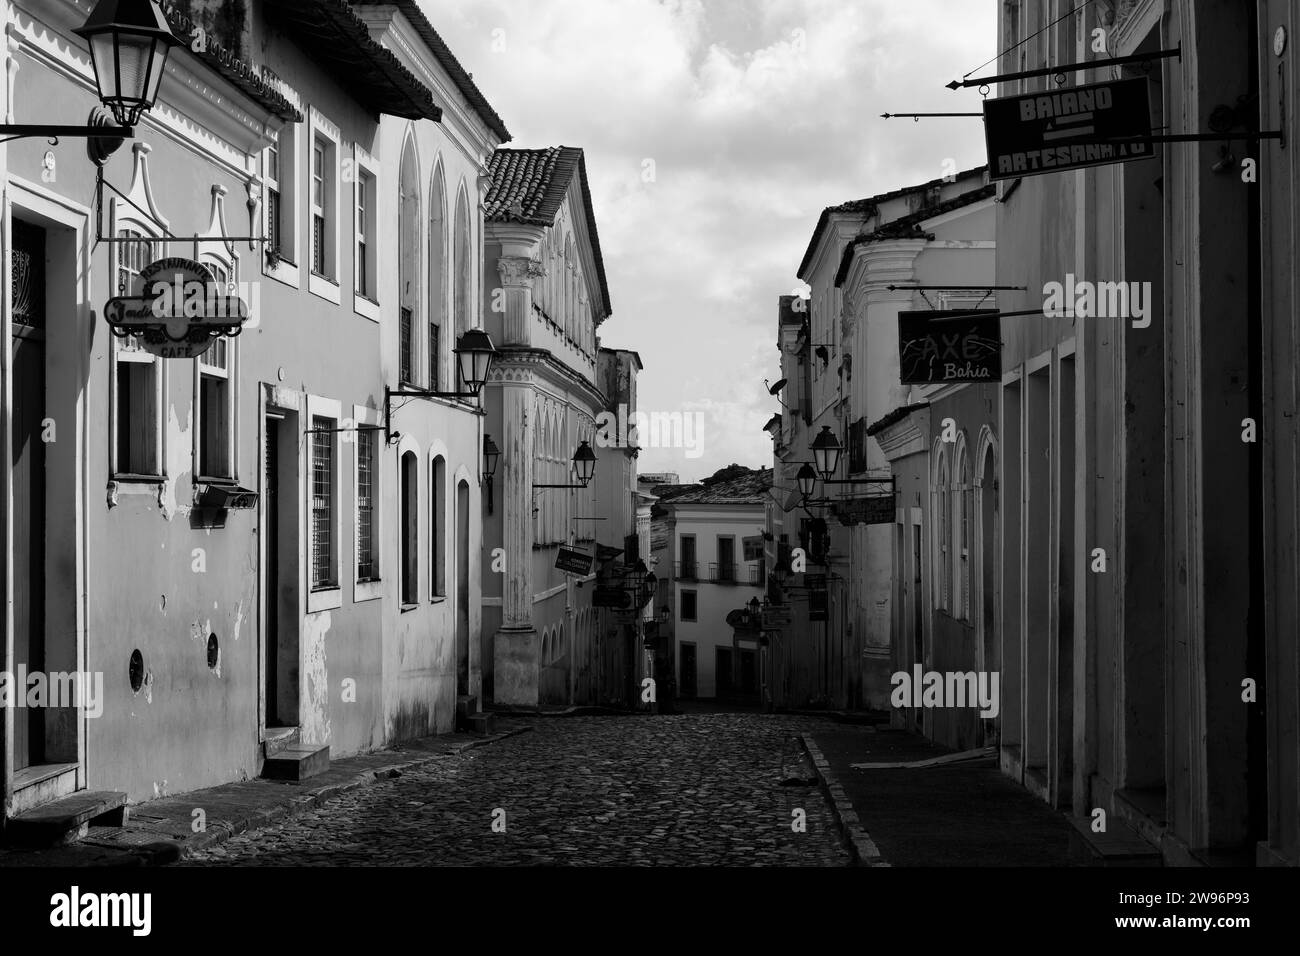 Salvador, Bahia, Brésil - 07 mars 2015 : Portrait en noir et blanc d'une rue avec de vieilles maisons à Pelourinho dans la ville de Salvador, Bahia. Banque D'Images